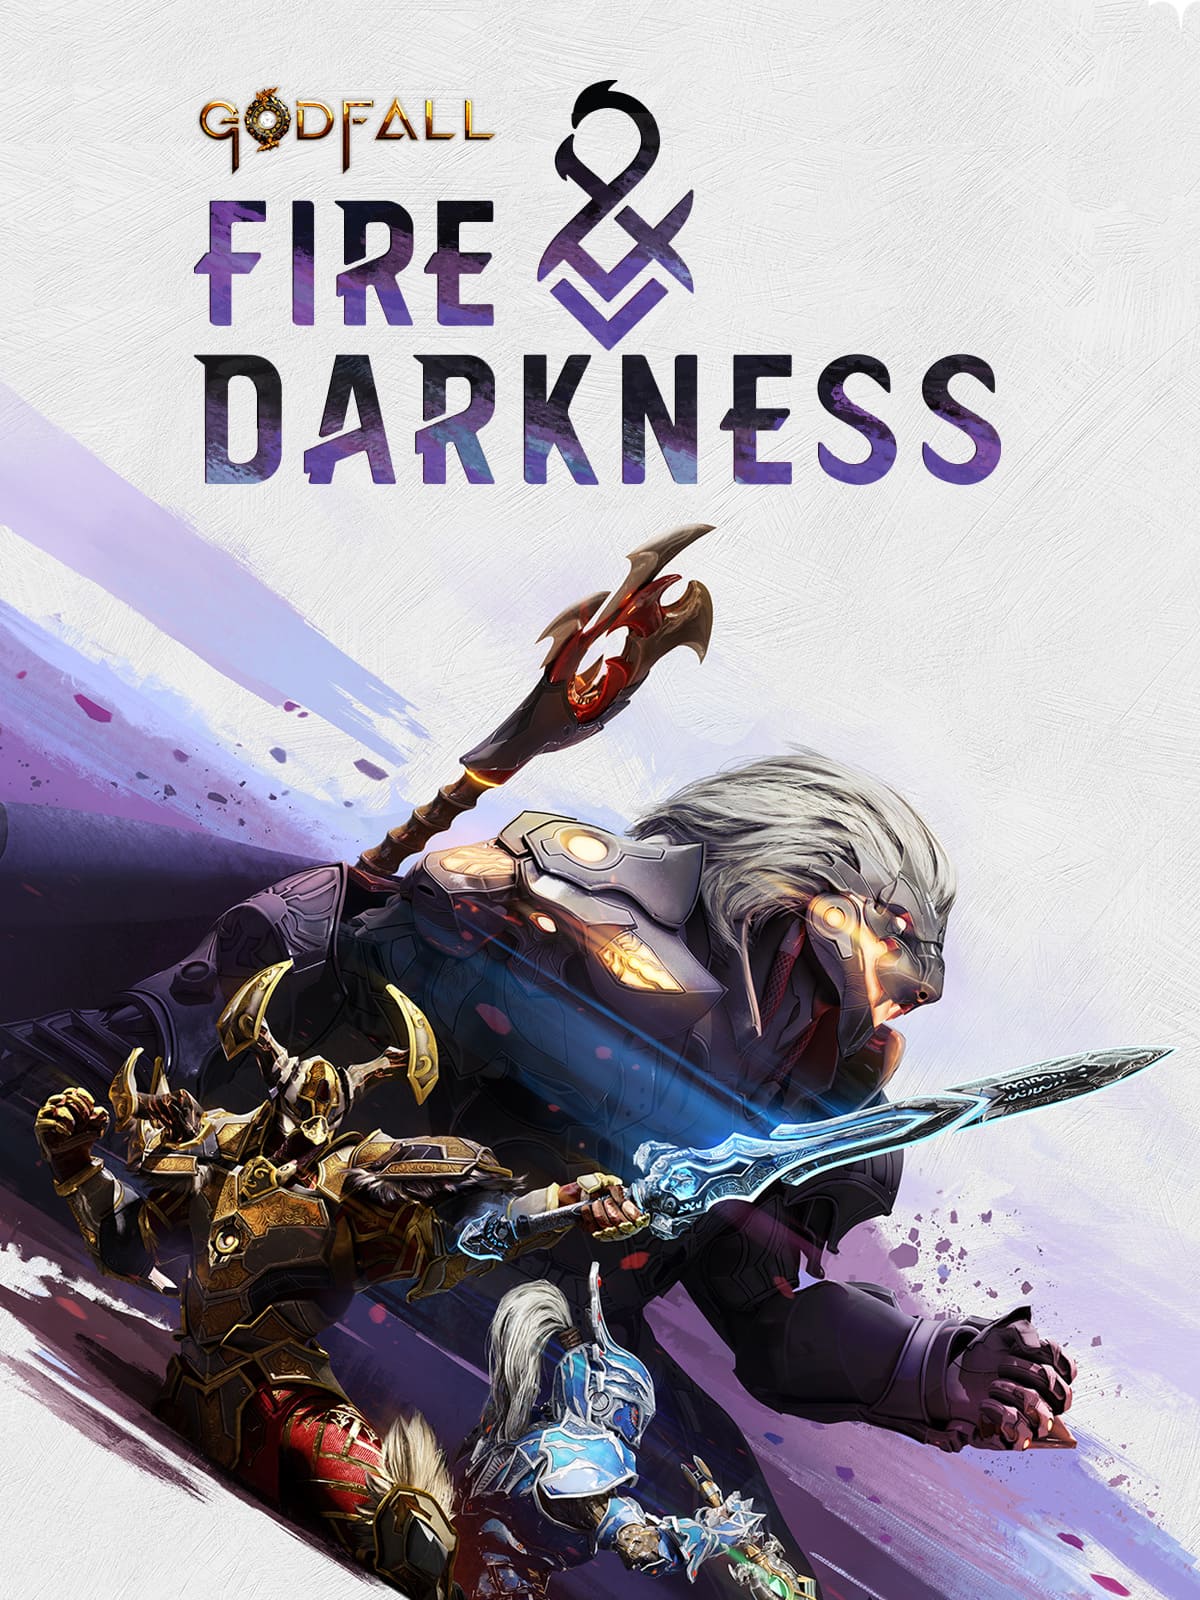 Portada del DLC del juego 'Godfall: Fuego y Oscuridad'.